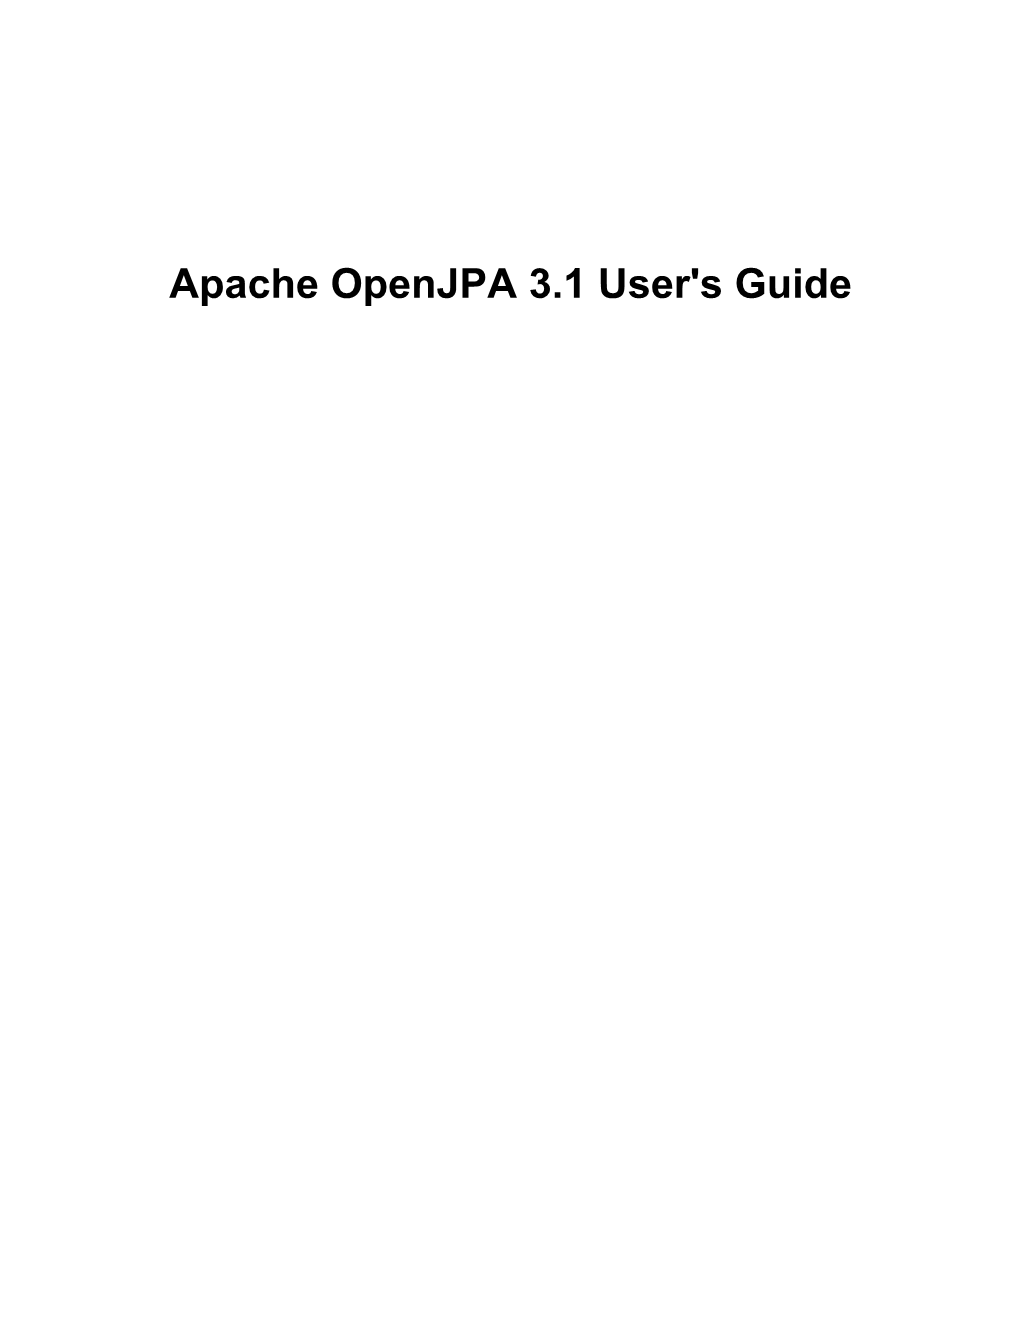 Apache Openjpa 3.1 User's Guide Apache Openjpa 3.1 User's Guide Built from Openjpa Version Revision Afcec21a1d489dff682a3ce7986fac6a1c80e8e0